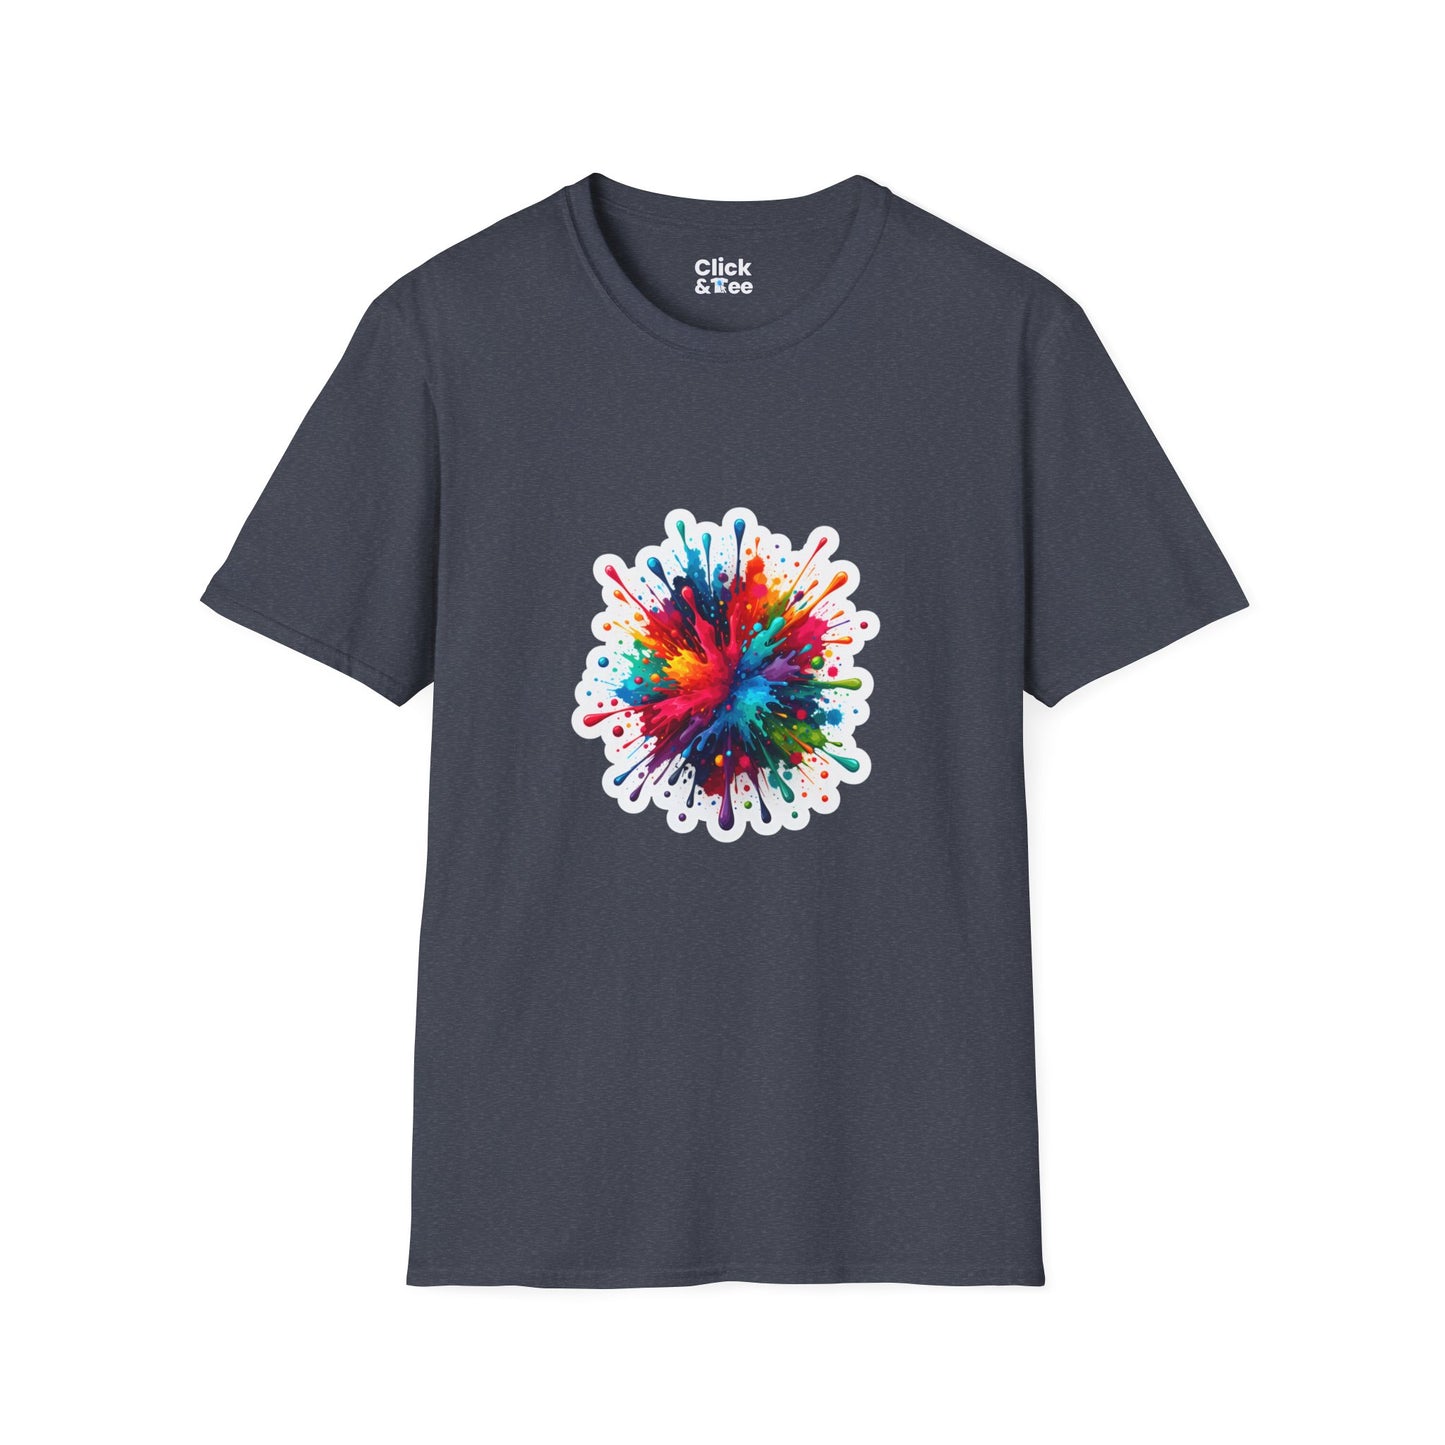 Color Splatter T-Shirt - Vibrant Splatter Paint Art Exploding in all directions - Color Splatter Style T-Shirt